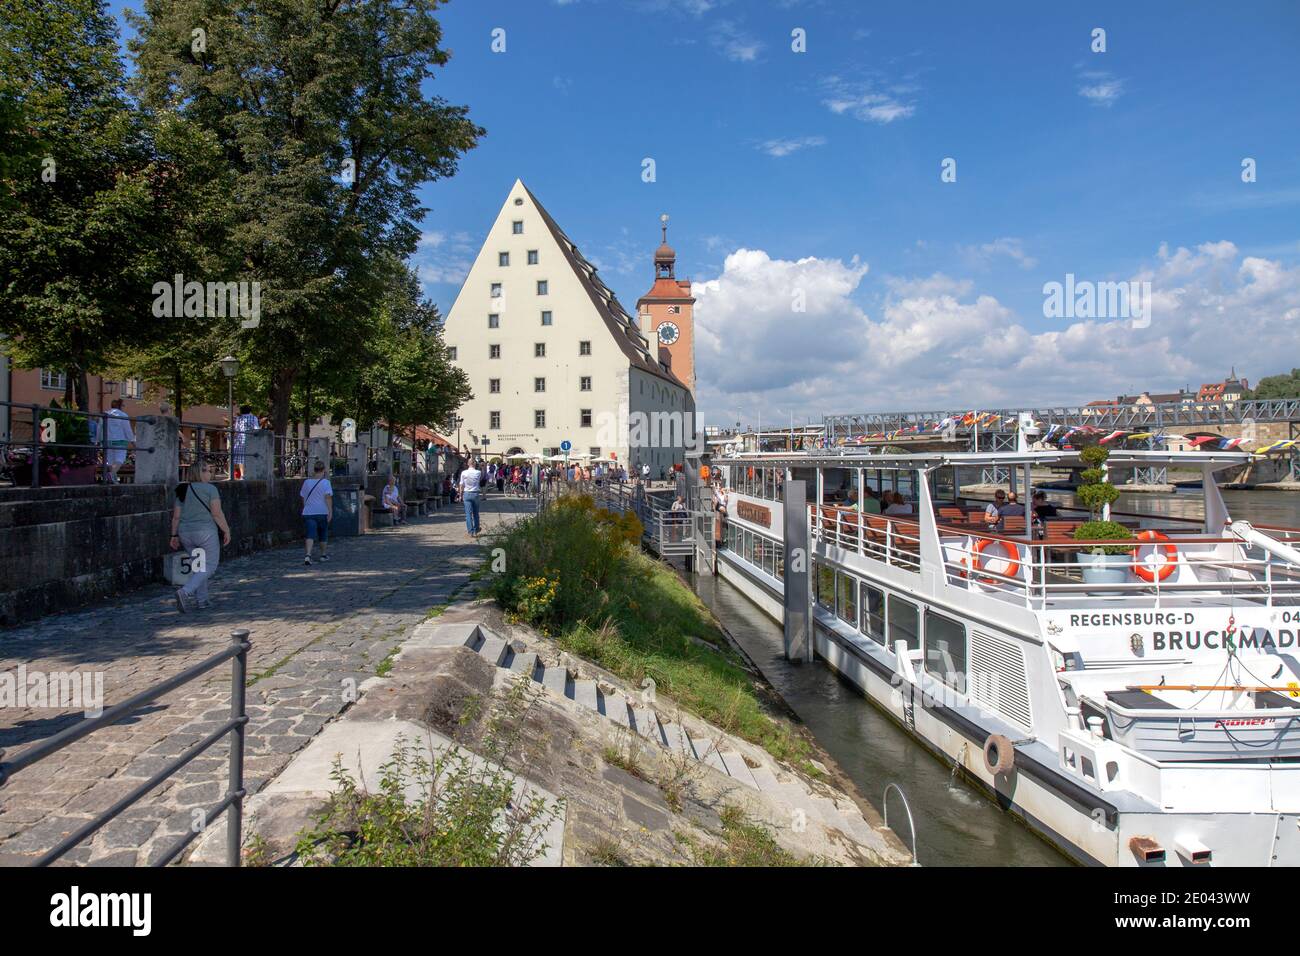 Lado del Danubio, con Besucherzentrum Welterbe a distancia y el barco Bruckmadl a la derecha en primer plano, Regensburg, Baviera, Alemania. Este museo focu Foto de stock